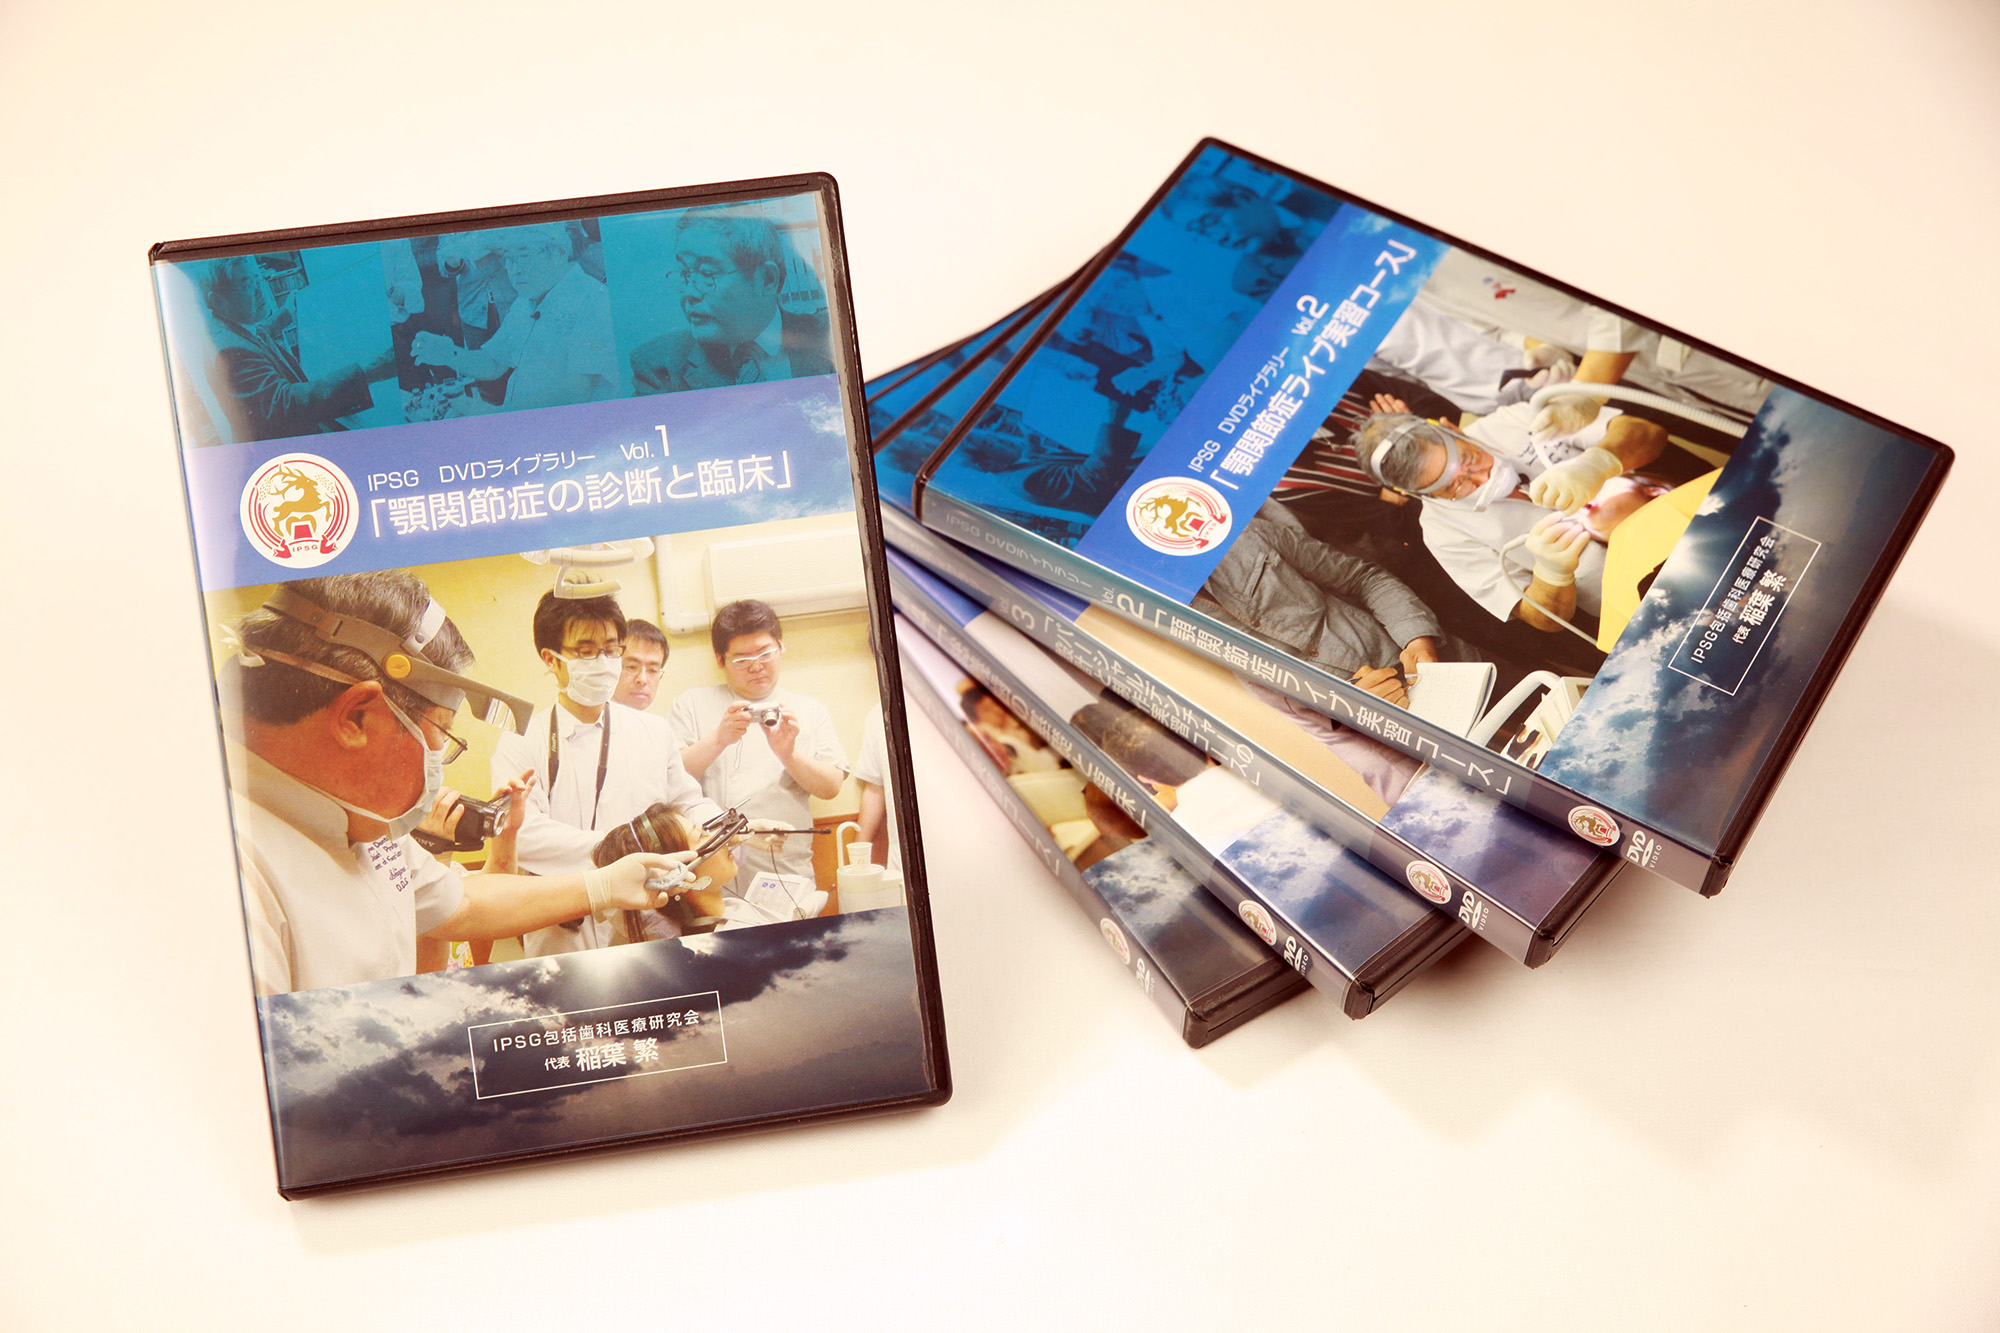 IPSG DVDライブラリーVol.6『ハーモニックオクルージョン』